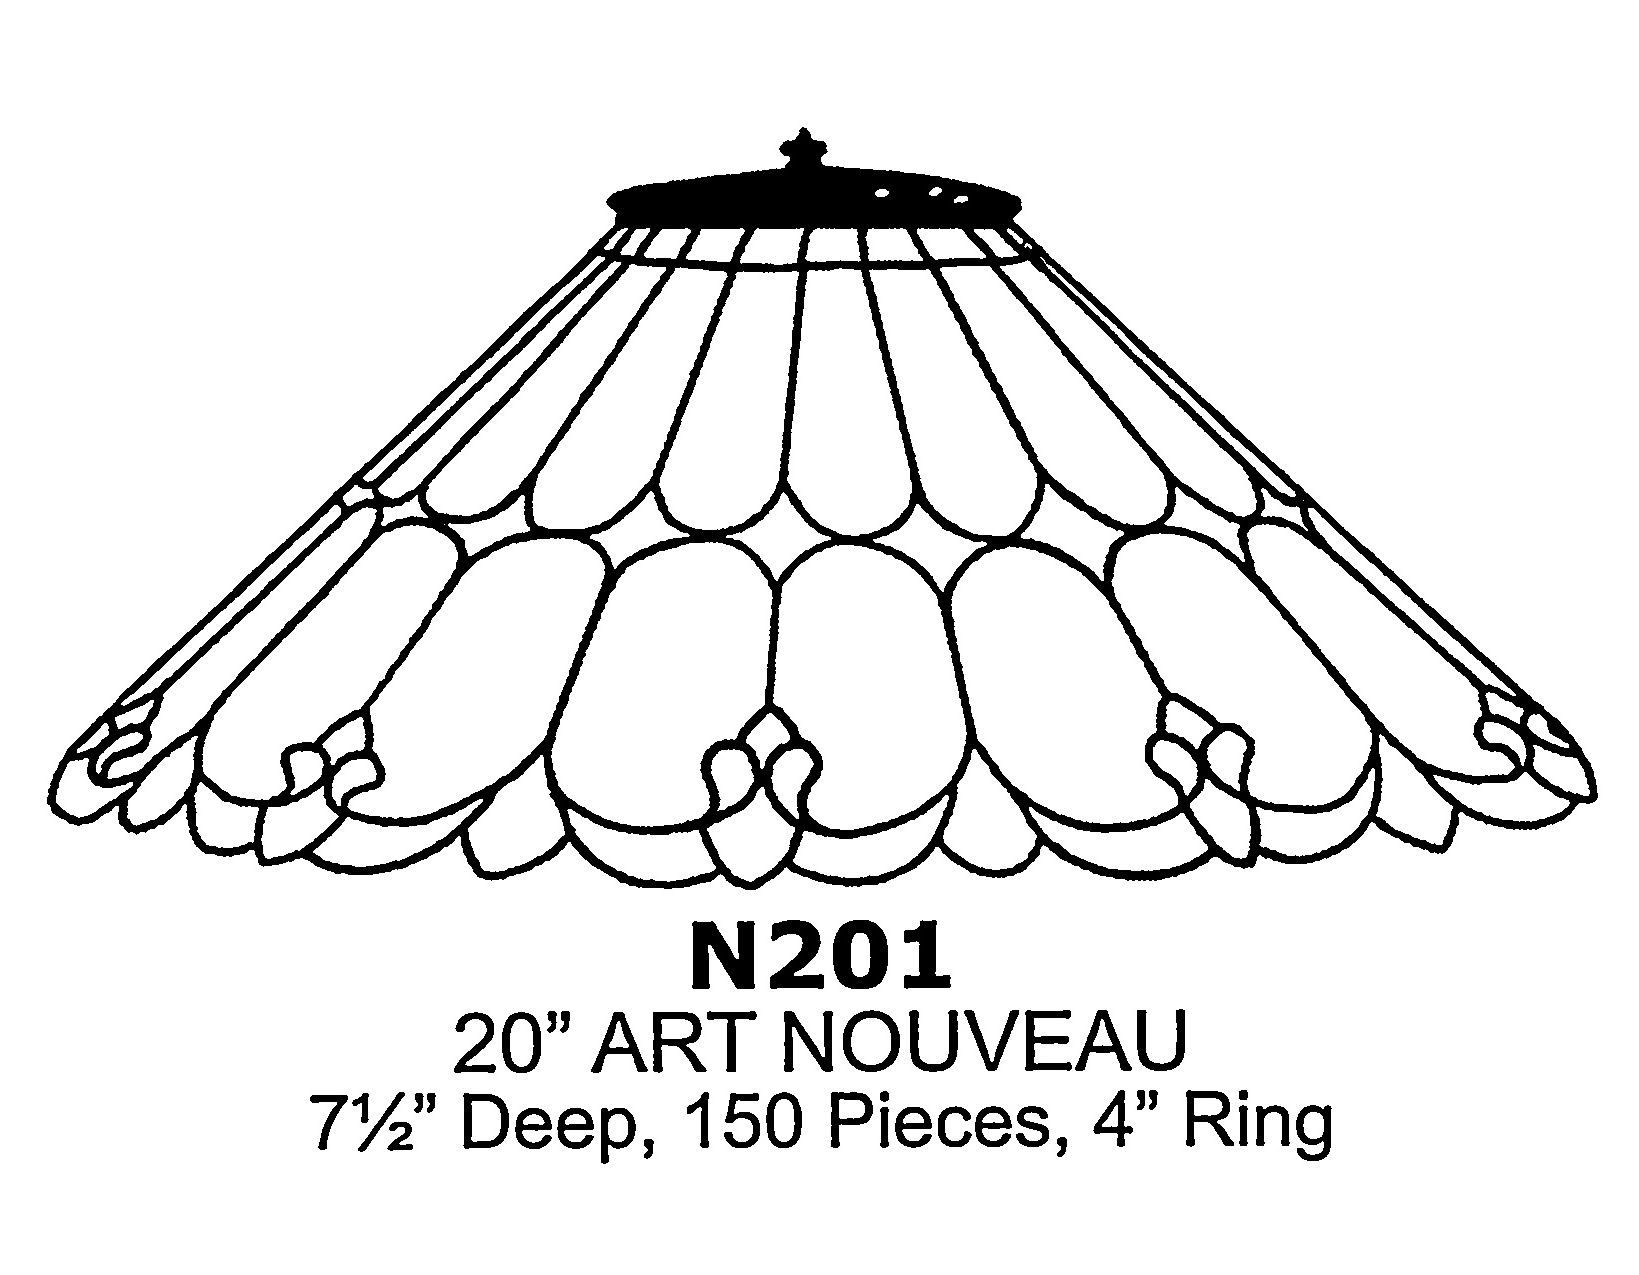 20" Art Nouveau